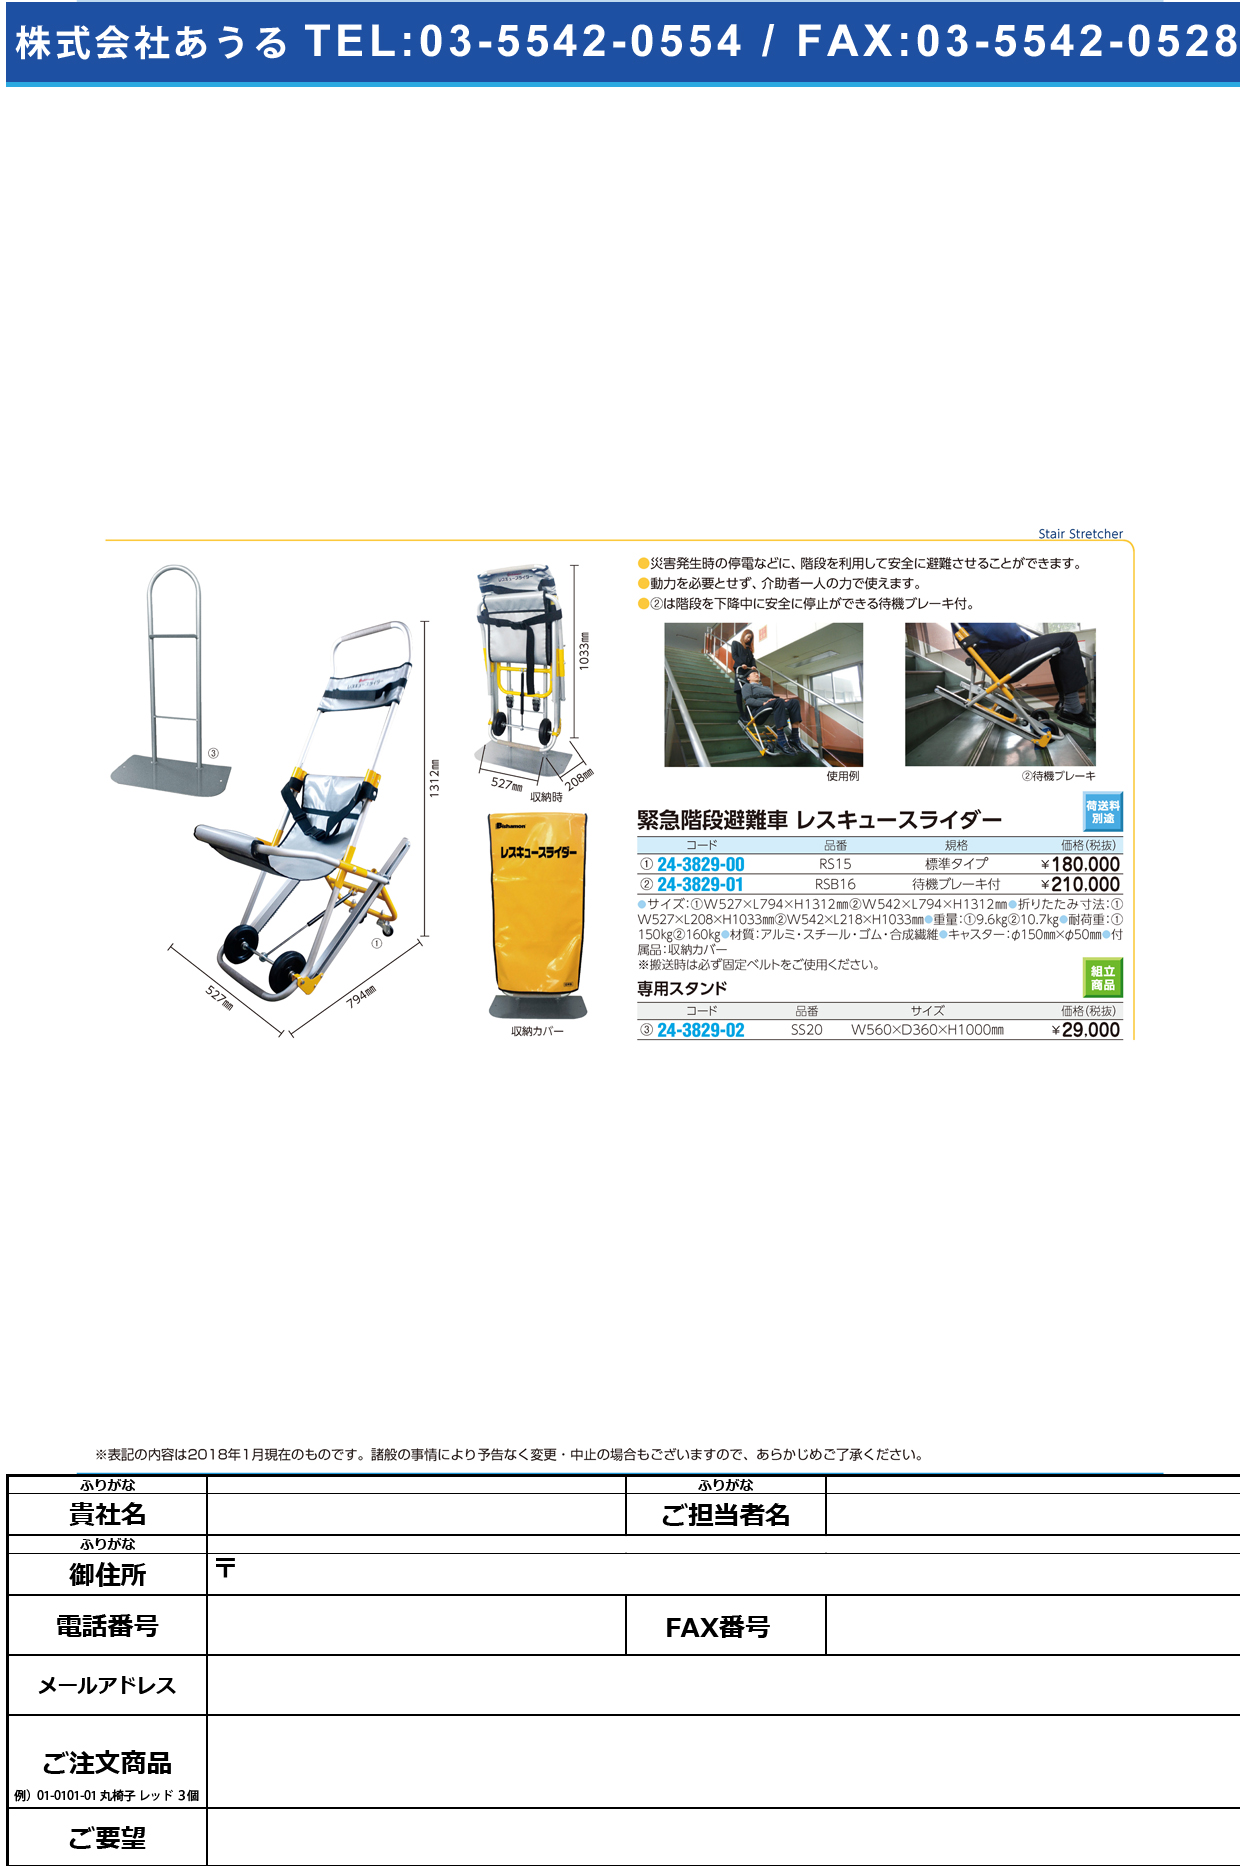 (24-3829-01)レスキュースライダー（緊急階段避難車 RSB16(ﾁｭｳｼｬﾌﾞﾚｰｷﾂｷ) ﾚｽｷｭｰｽﾗｲﾀﾞｰ【1台単位】【2018年カタログ商品】